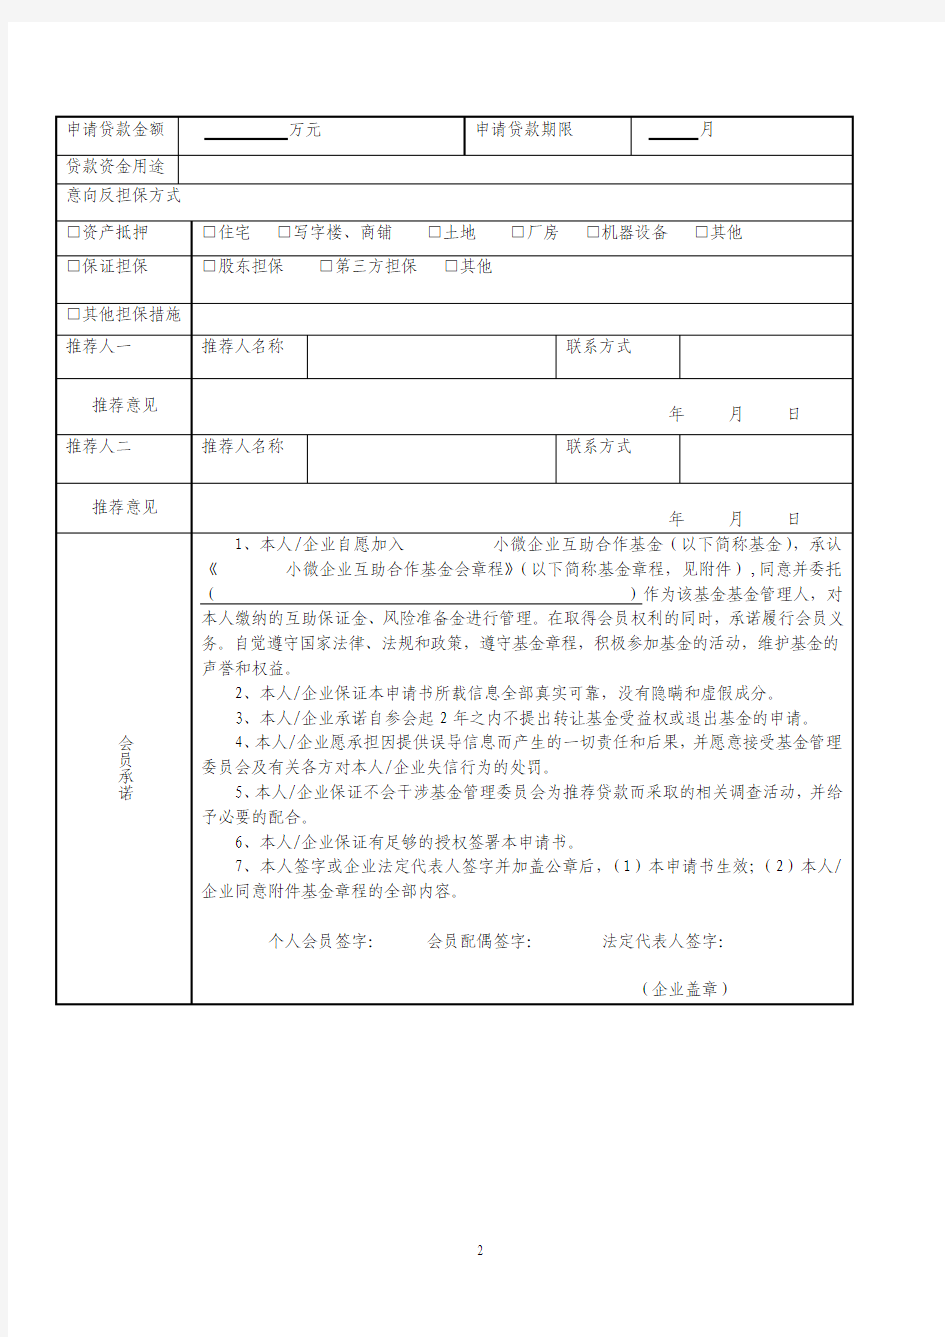 中国民生银行小微企业互助合作基金入会申请书(附章程)